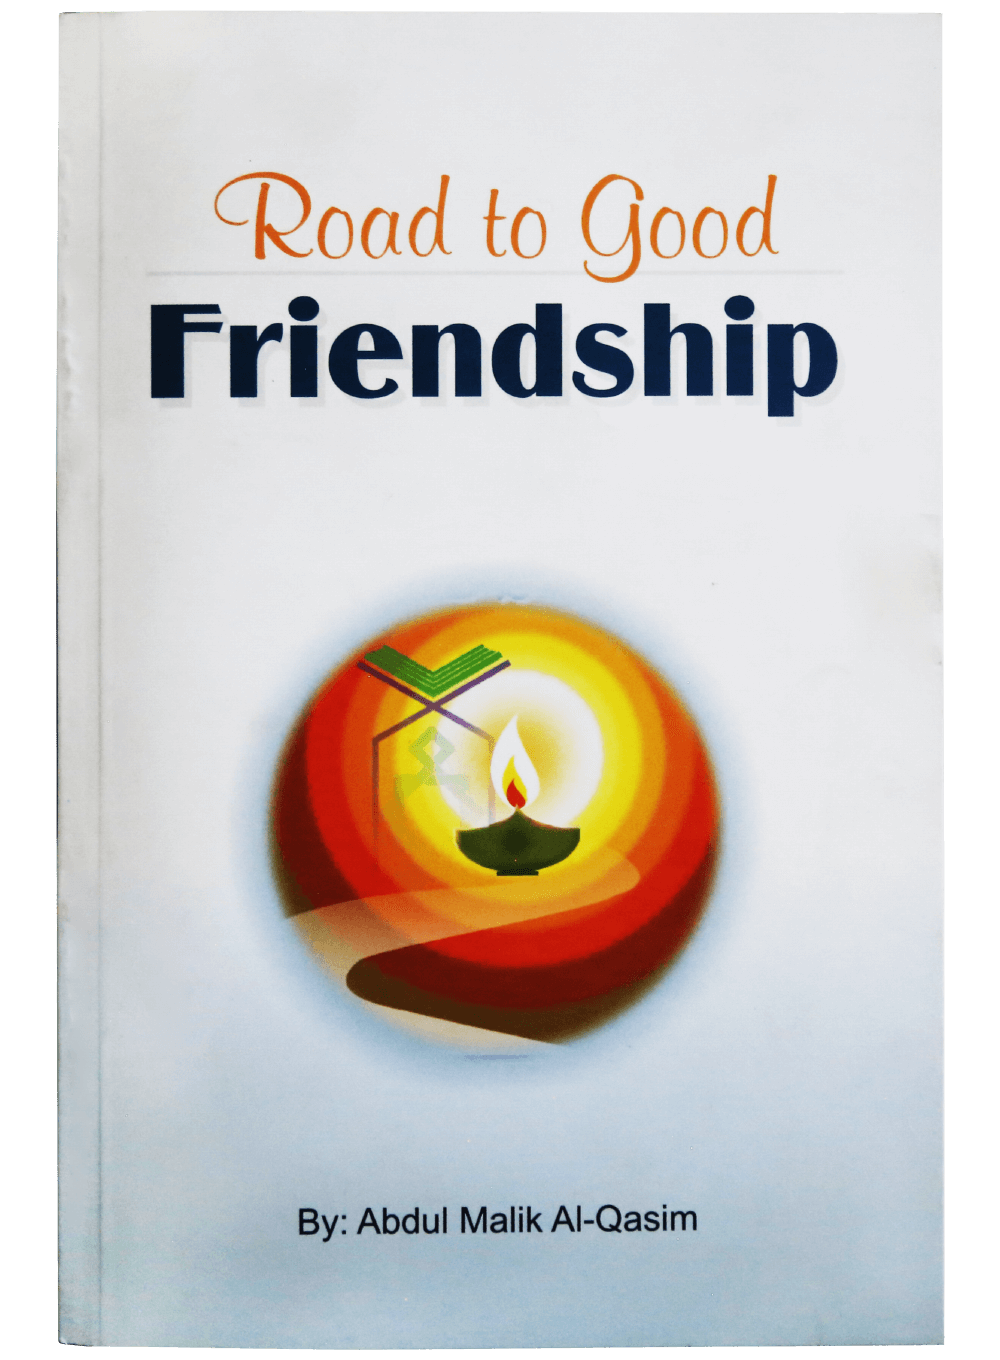 road-to-good-friendship-darussalam-20180410-174811